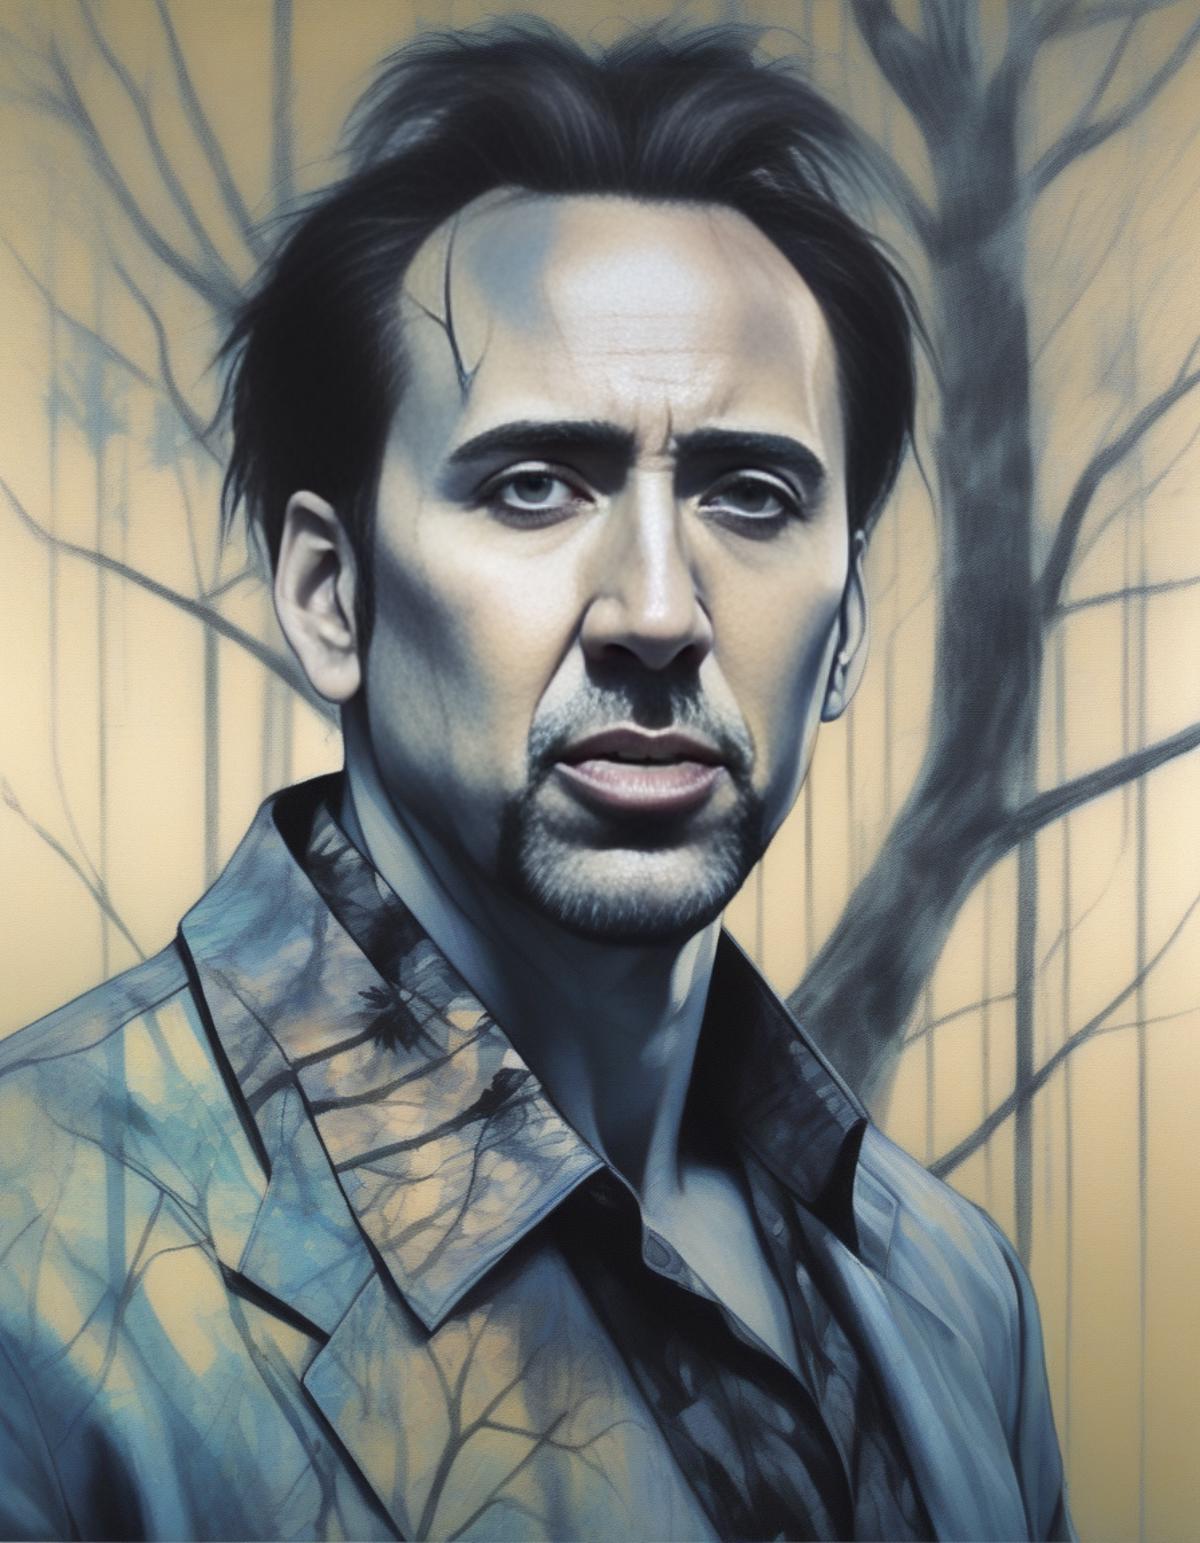 Nicolas Cage SDXL LoRA (Made by parar20) image by MassBrainImpact